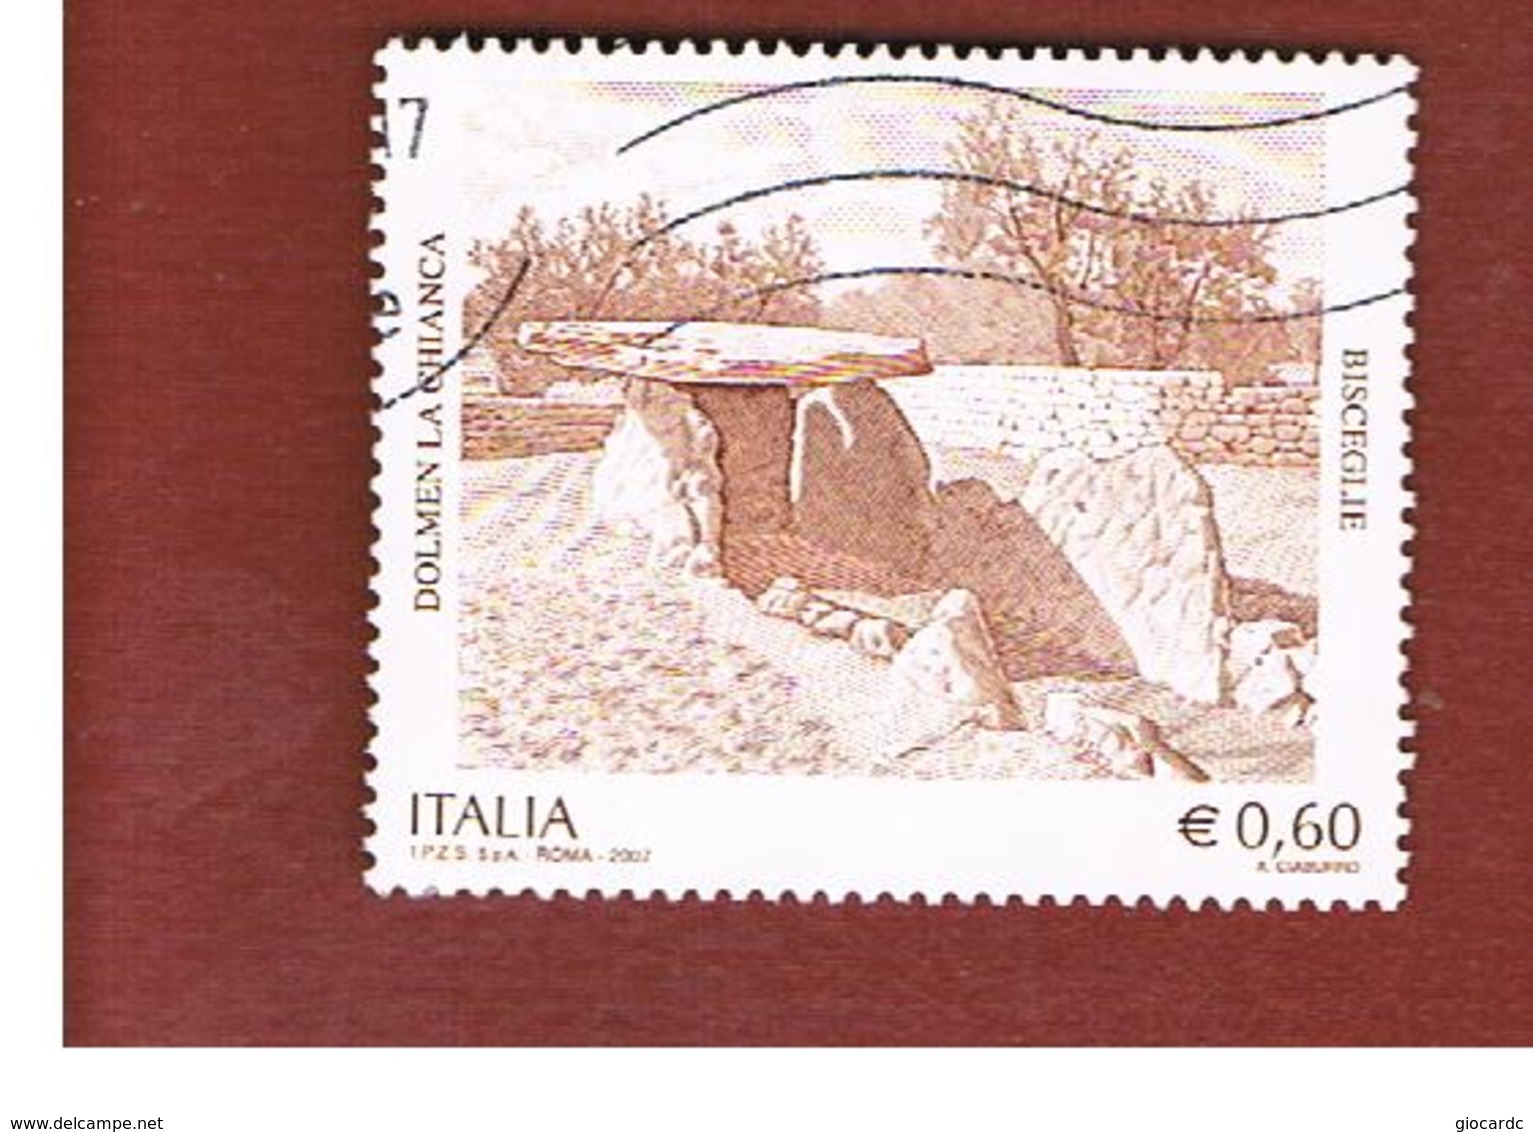 ITALIA REPUBBLICA  -   2007  DOLMEN BISCEGLIE  -   USATO  ° - 2001-10: Usati